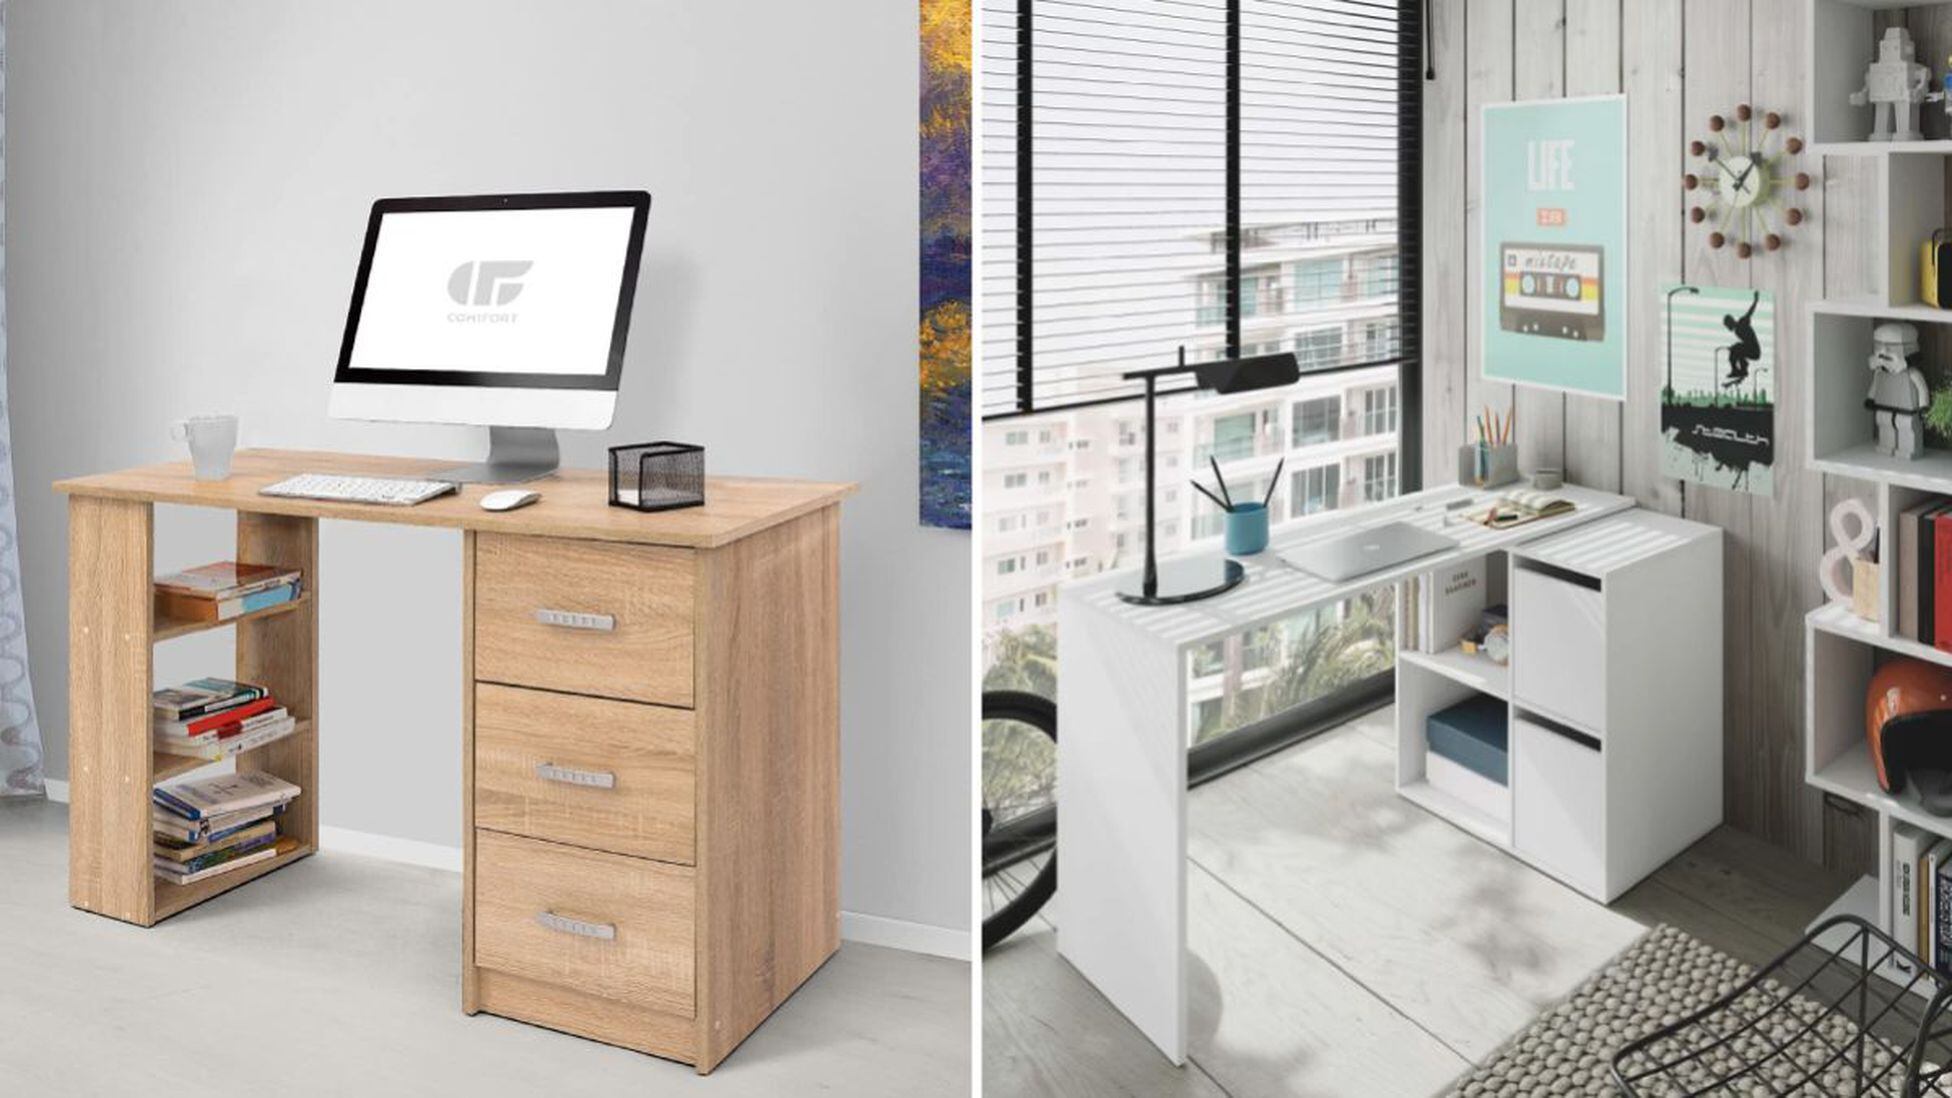 Escoge el mejor escritorio o mesa para montar oficina rincón estudio en casa Escoge el mejor escritorio o mesa para montar tu oficina o rincón de estudio en casa -